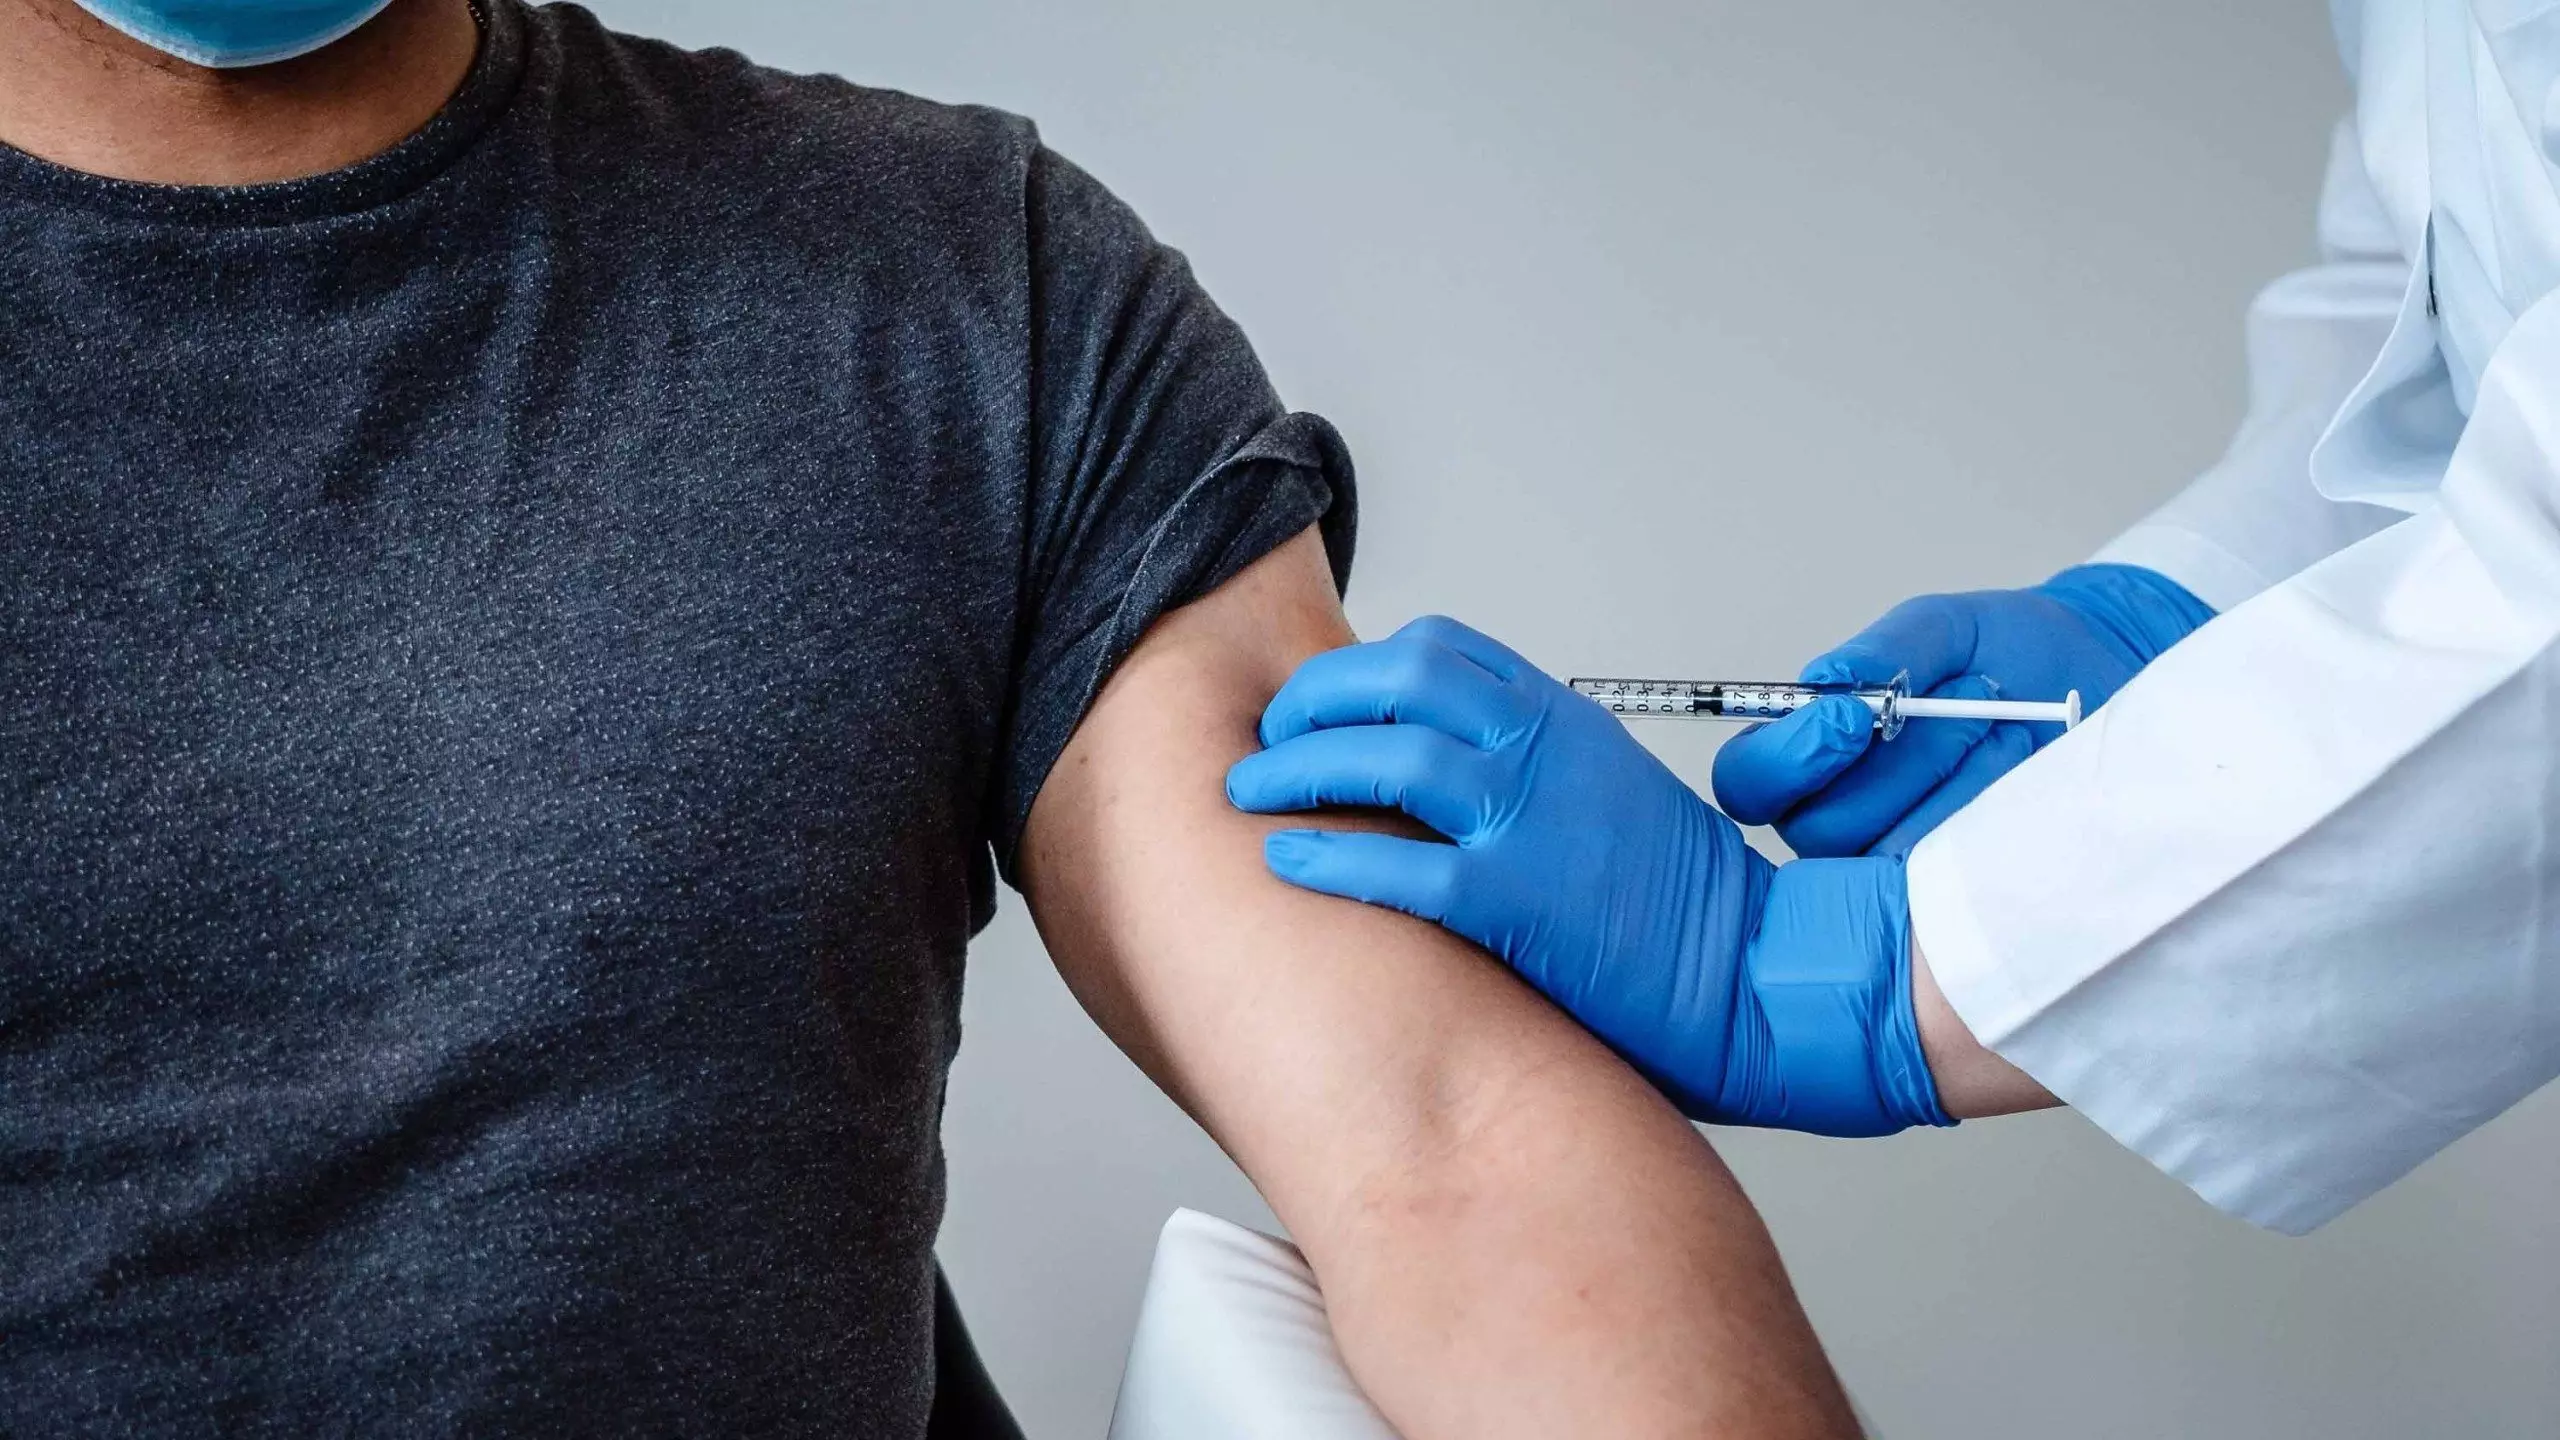 केंद्रीय स्वास्थ्य मंत्रालय ने कहा- COVID-19 वैक्सीन लेना व्यक्ति की इच्छा पर निर्भर, जारी किए SOPs